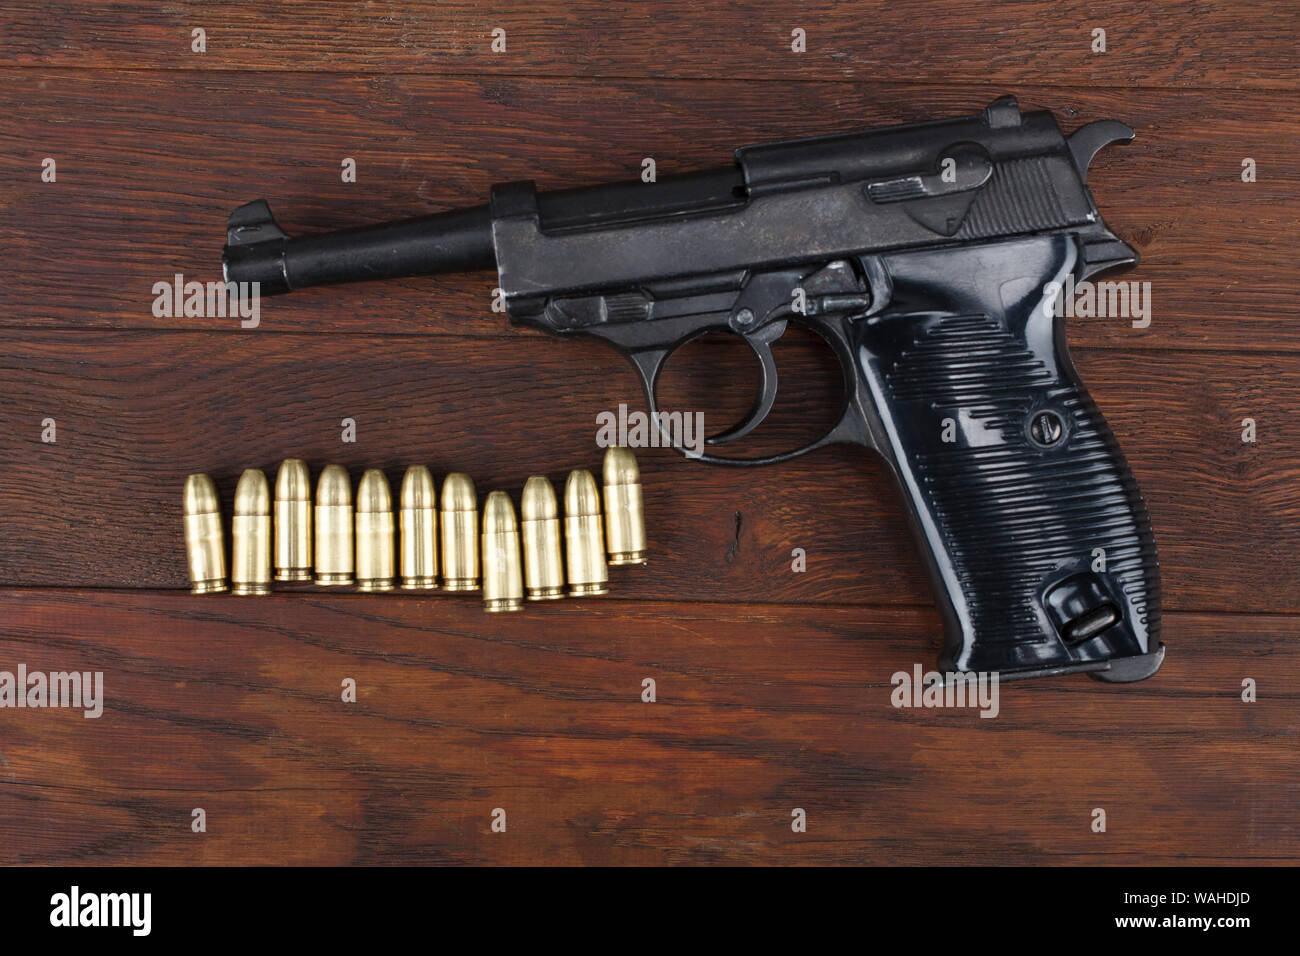 WWII ära Nazi-deutschen Armee Pistole mit Munition auf hölzernen Tisch Stockfoto